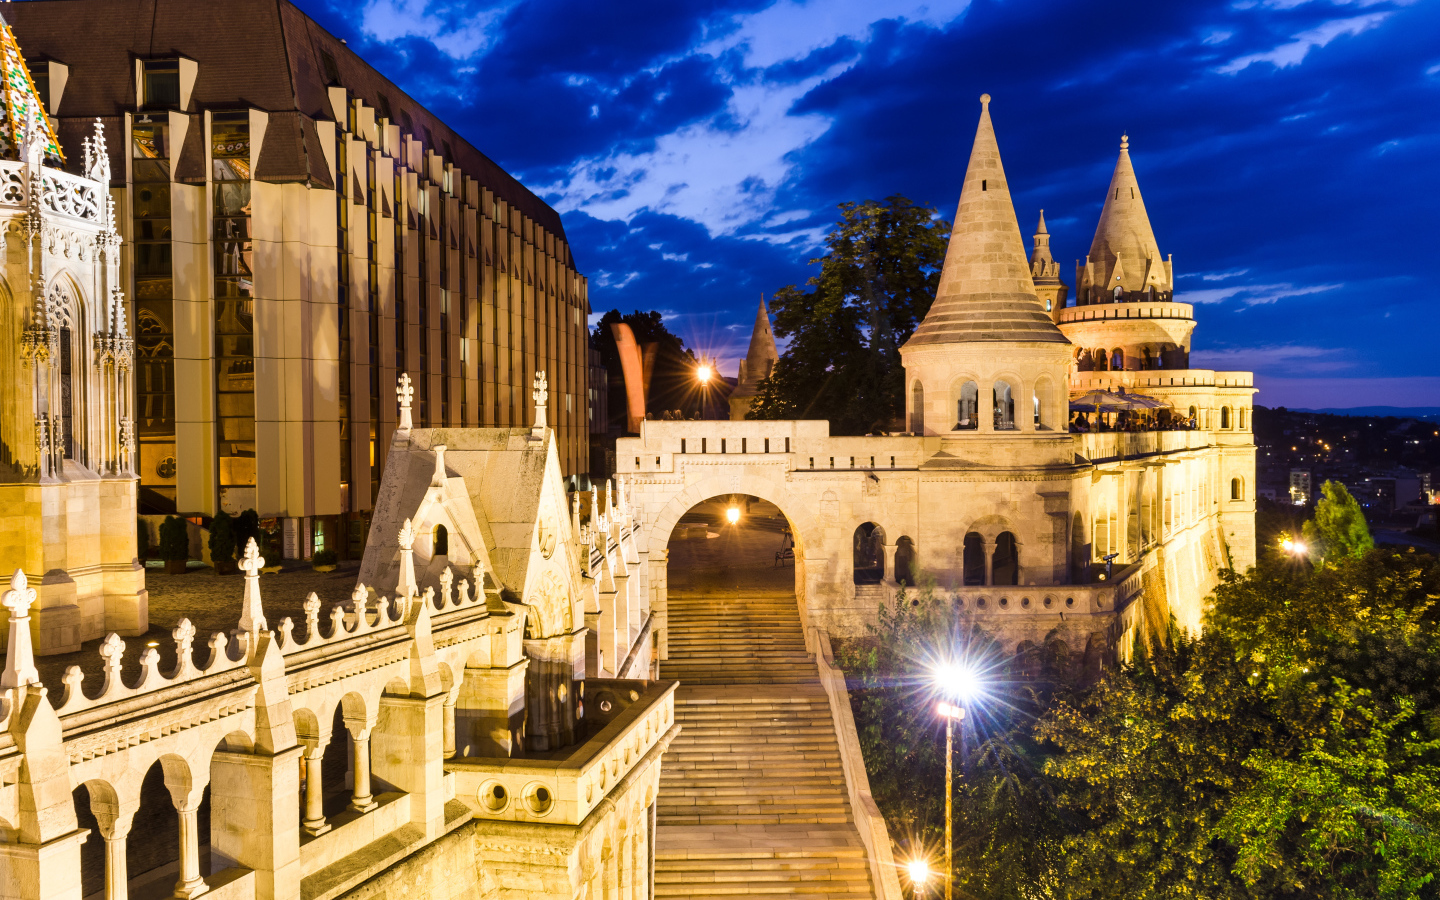 Высокая лестница в старинном замке в свете ночных фонарей, Будапешт